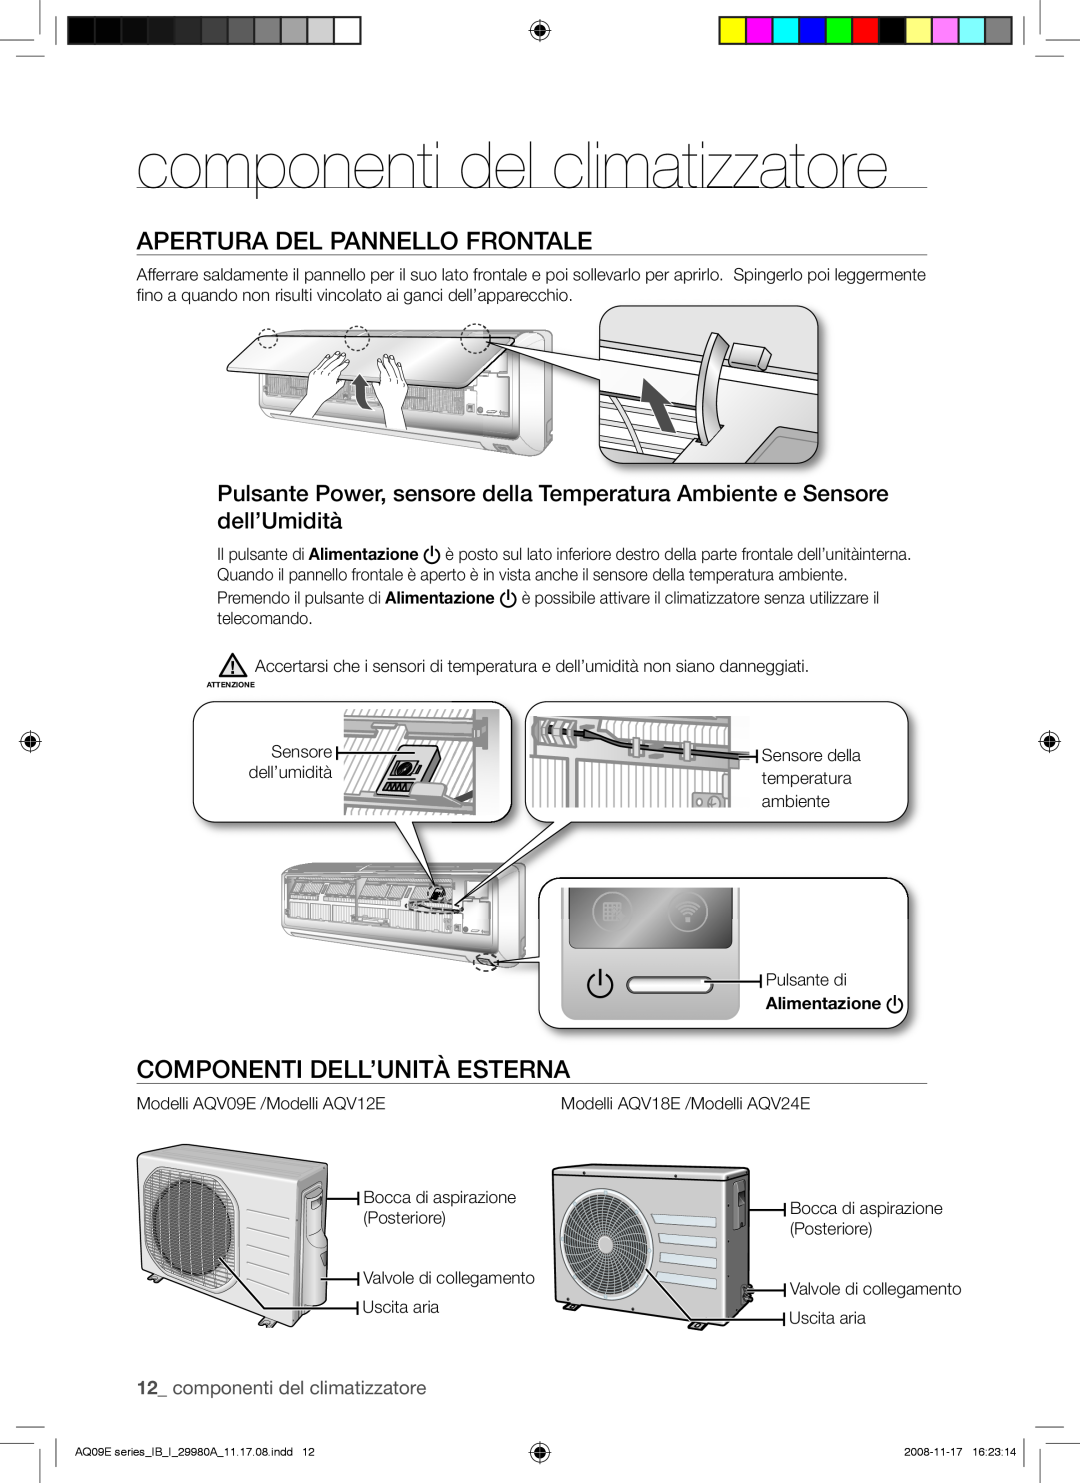 Samsung AQV12EWAN, AQV12EWAX componenti del climatizzatore, Apertura Del Pannello Frontale, Componenti Dell’Unità Esterna 